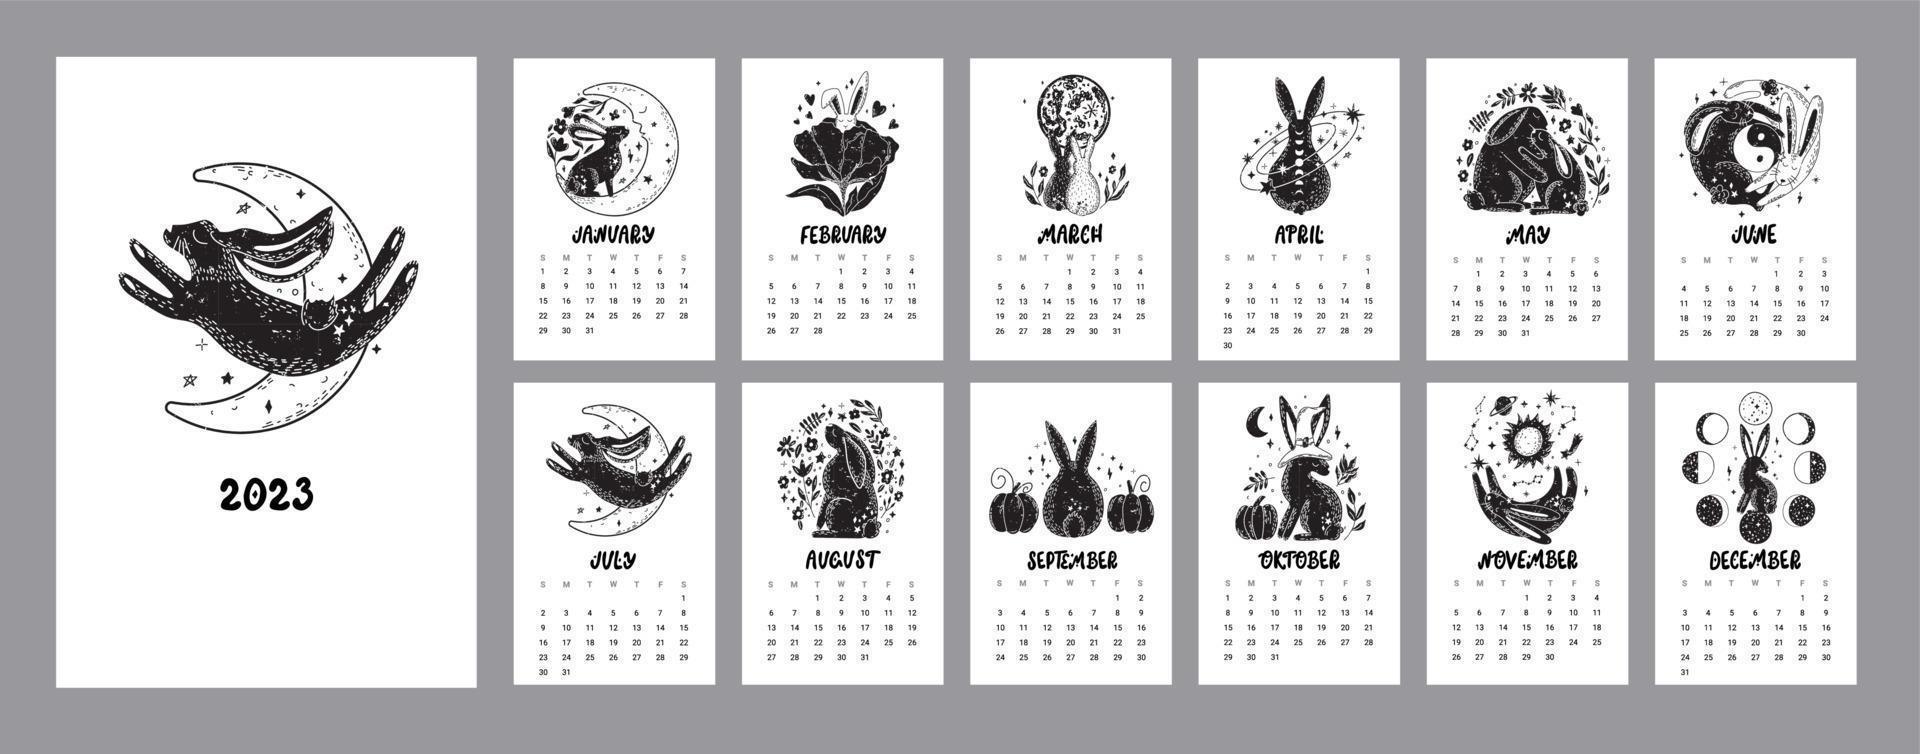 söt kalender 2023 med kaniner, astrologiska, esoterisk element. måne, stjärnor. svart kanin symbol. vektor